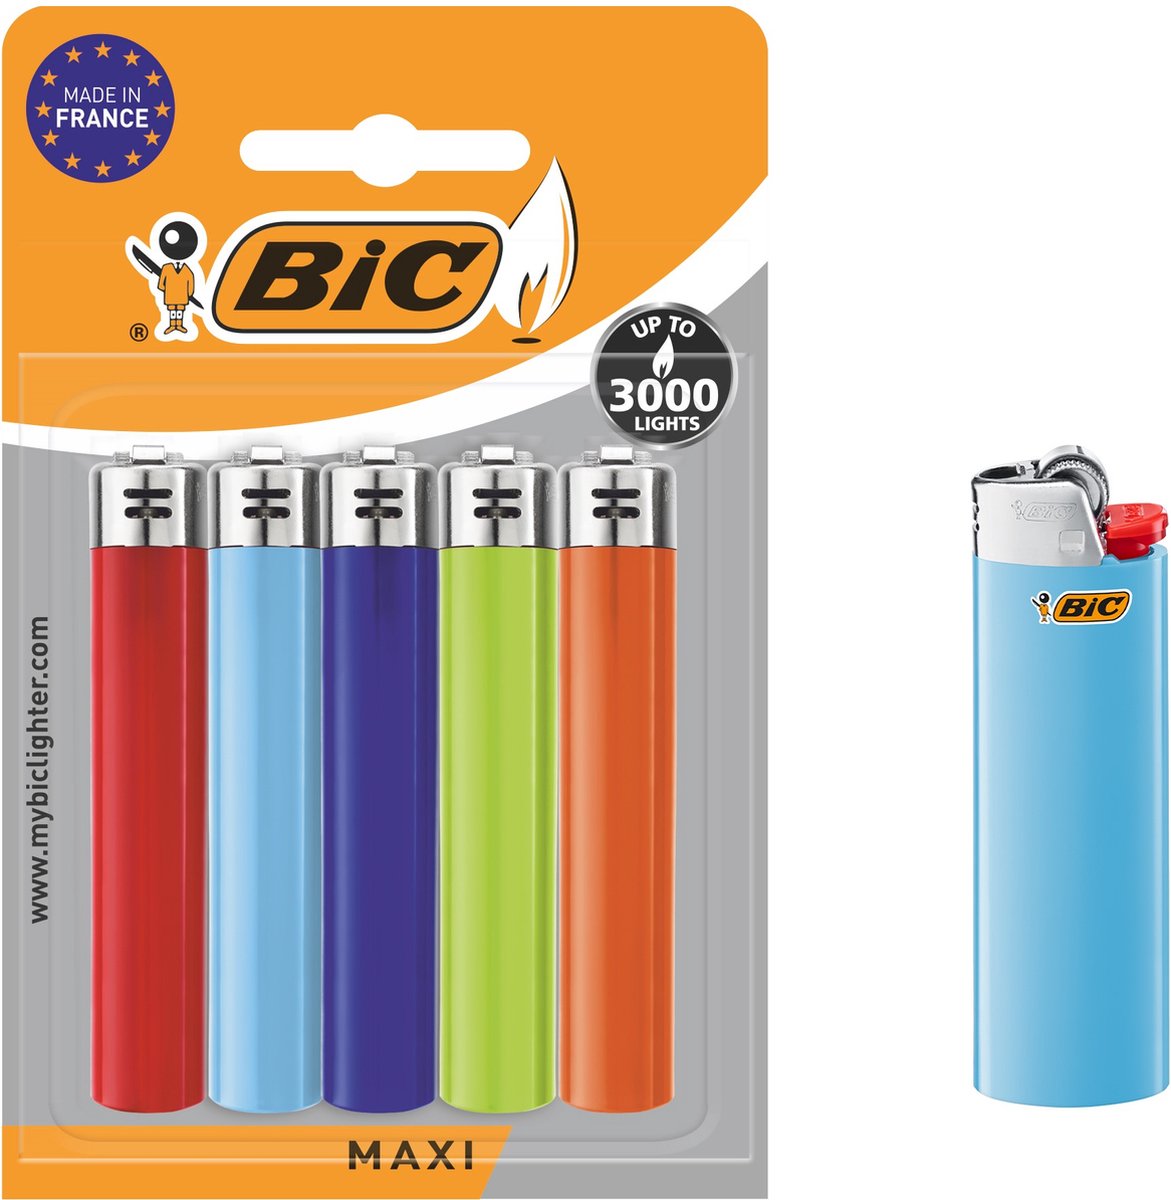 BIC J26 Maxi vuursteen flint aanstekers - diverse kleuren - Pak van 5  gasaanstekers -... | bol.com